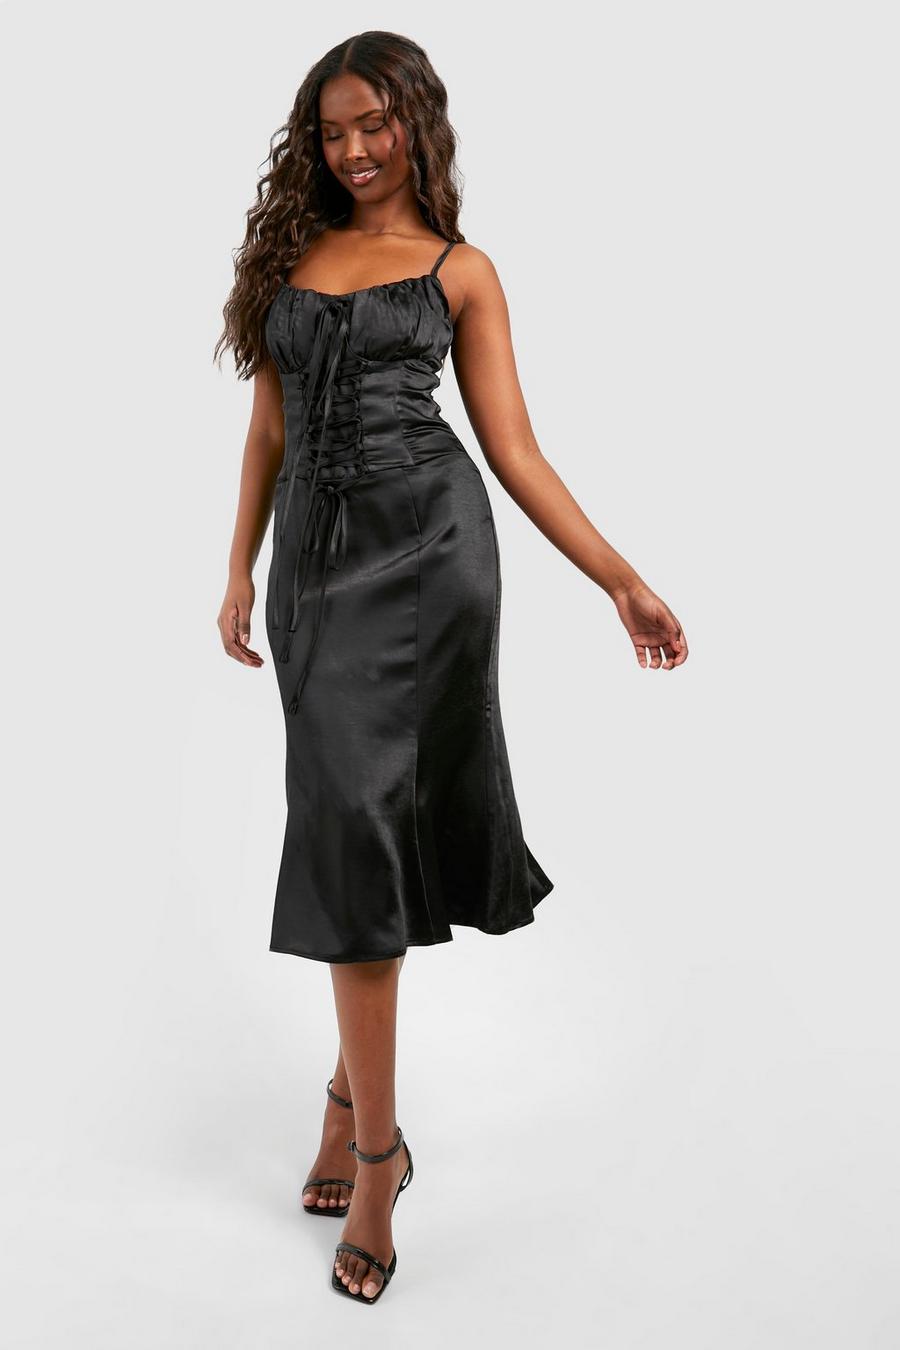 Black Satin Lace Up Corset Midi Dress